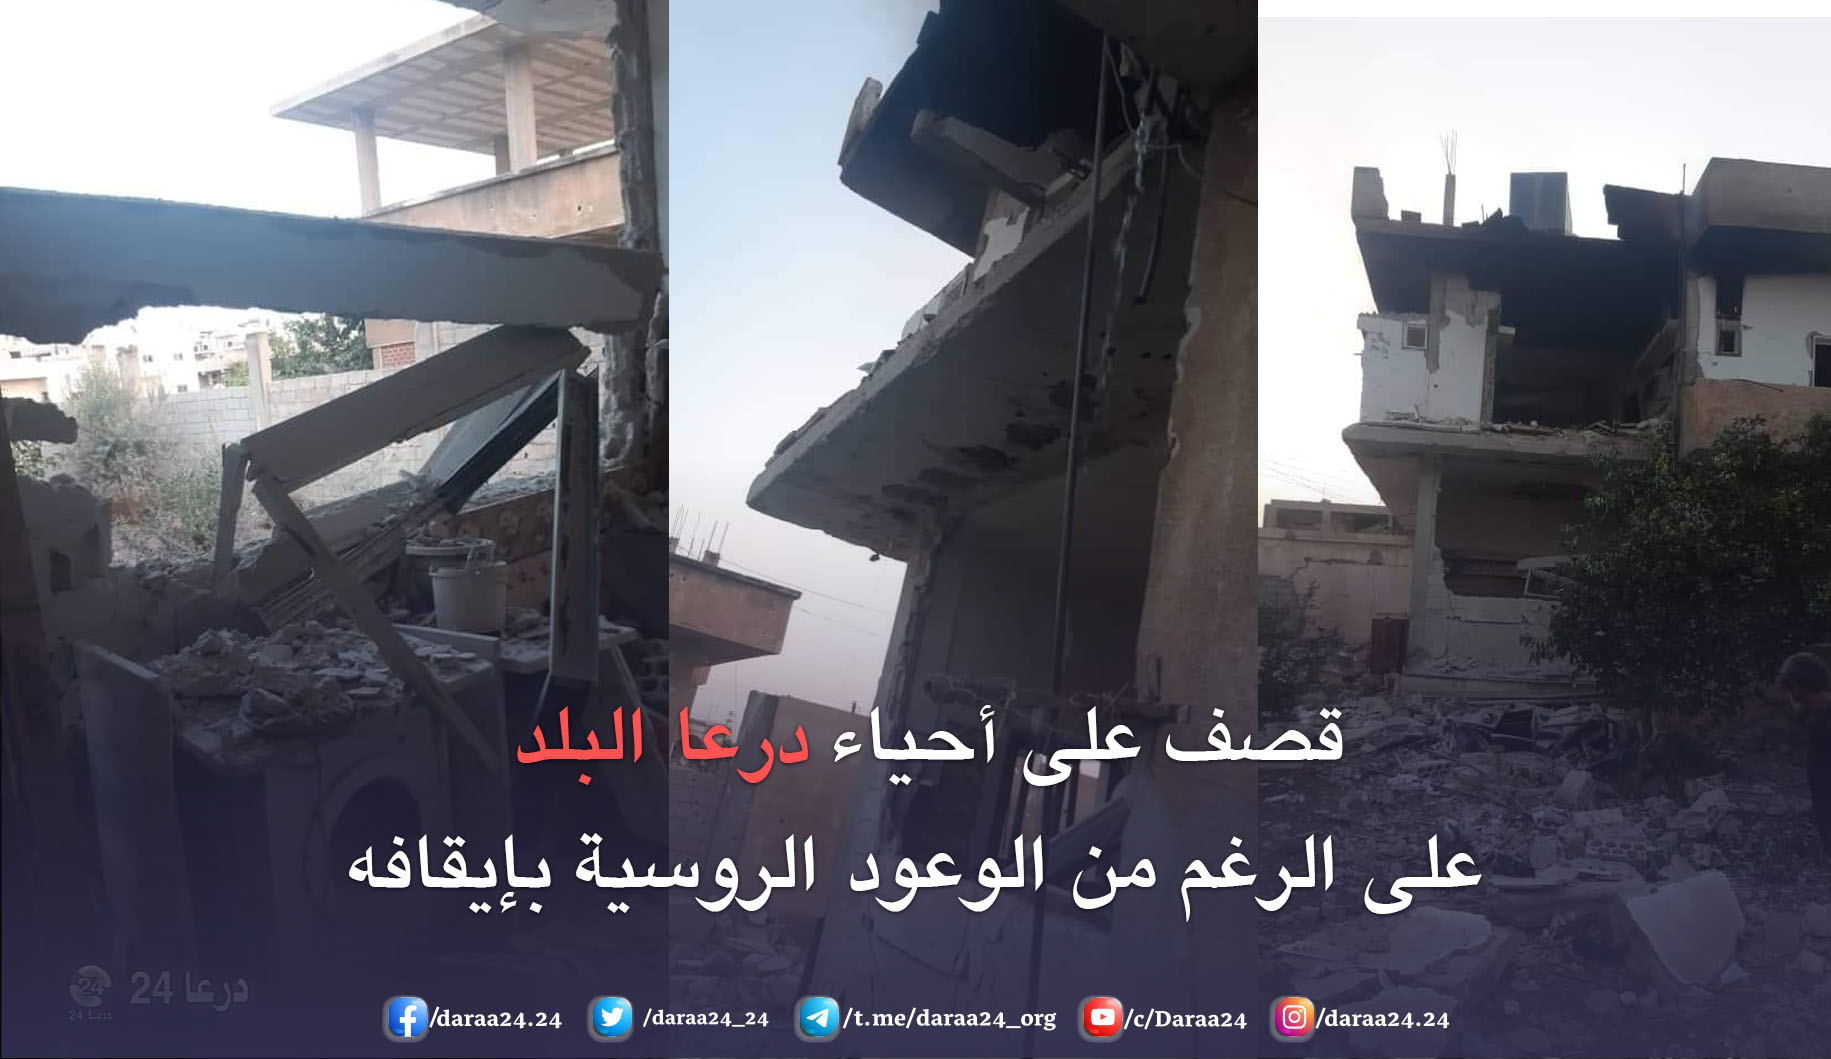 قصف منزل عضو لجنة مفاوضات في درعا البلد